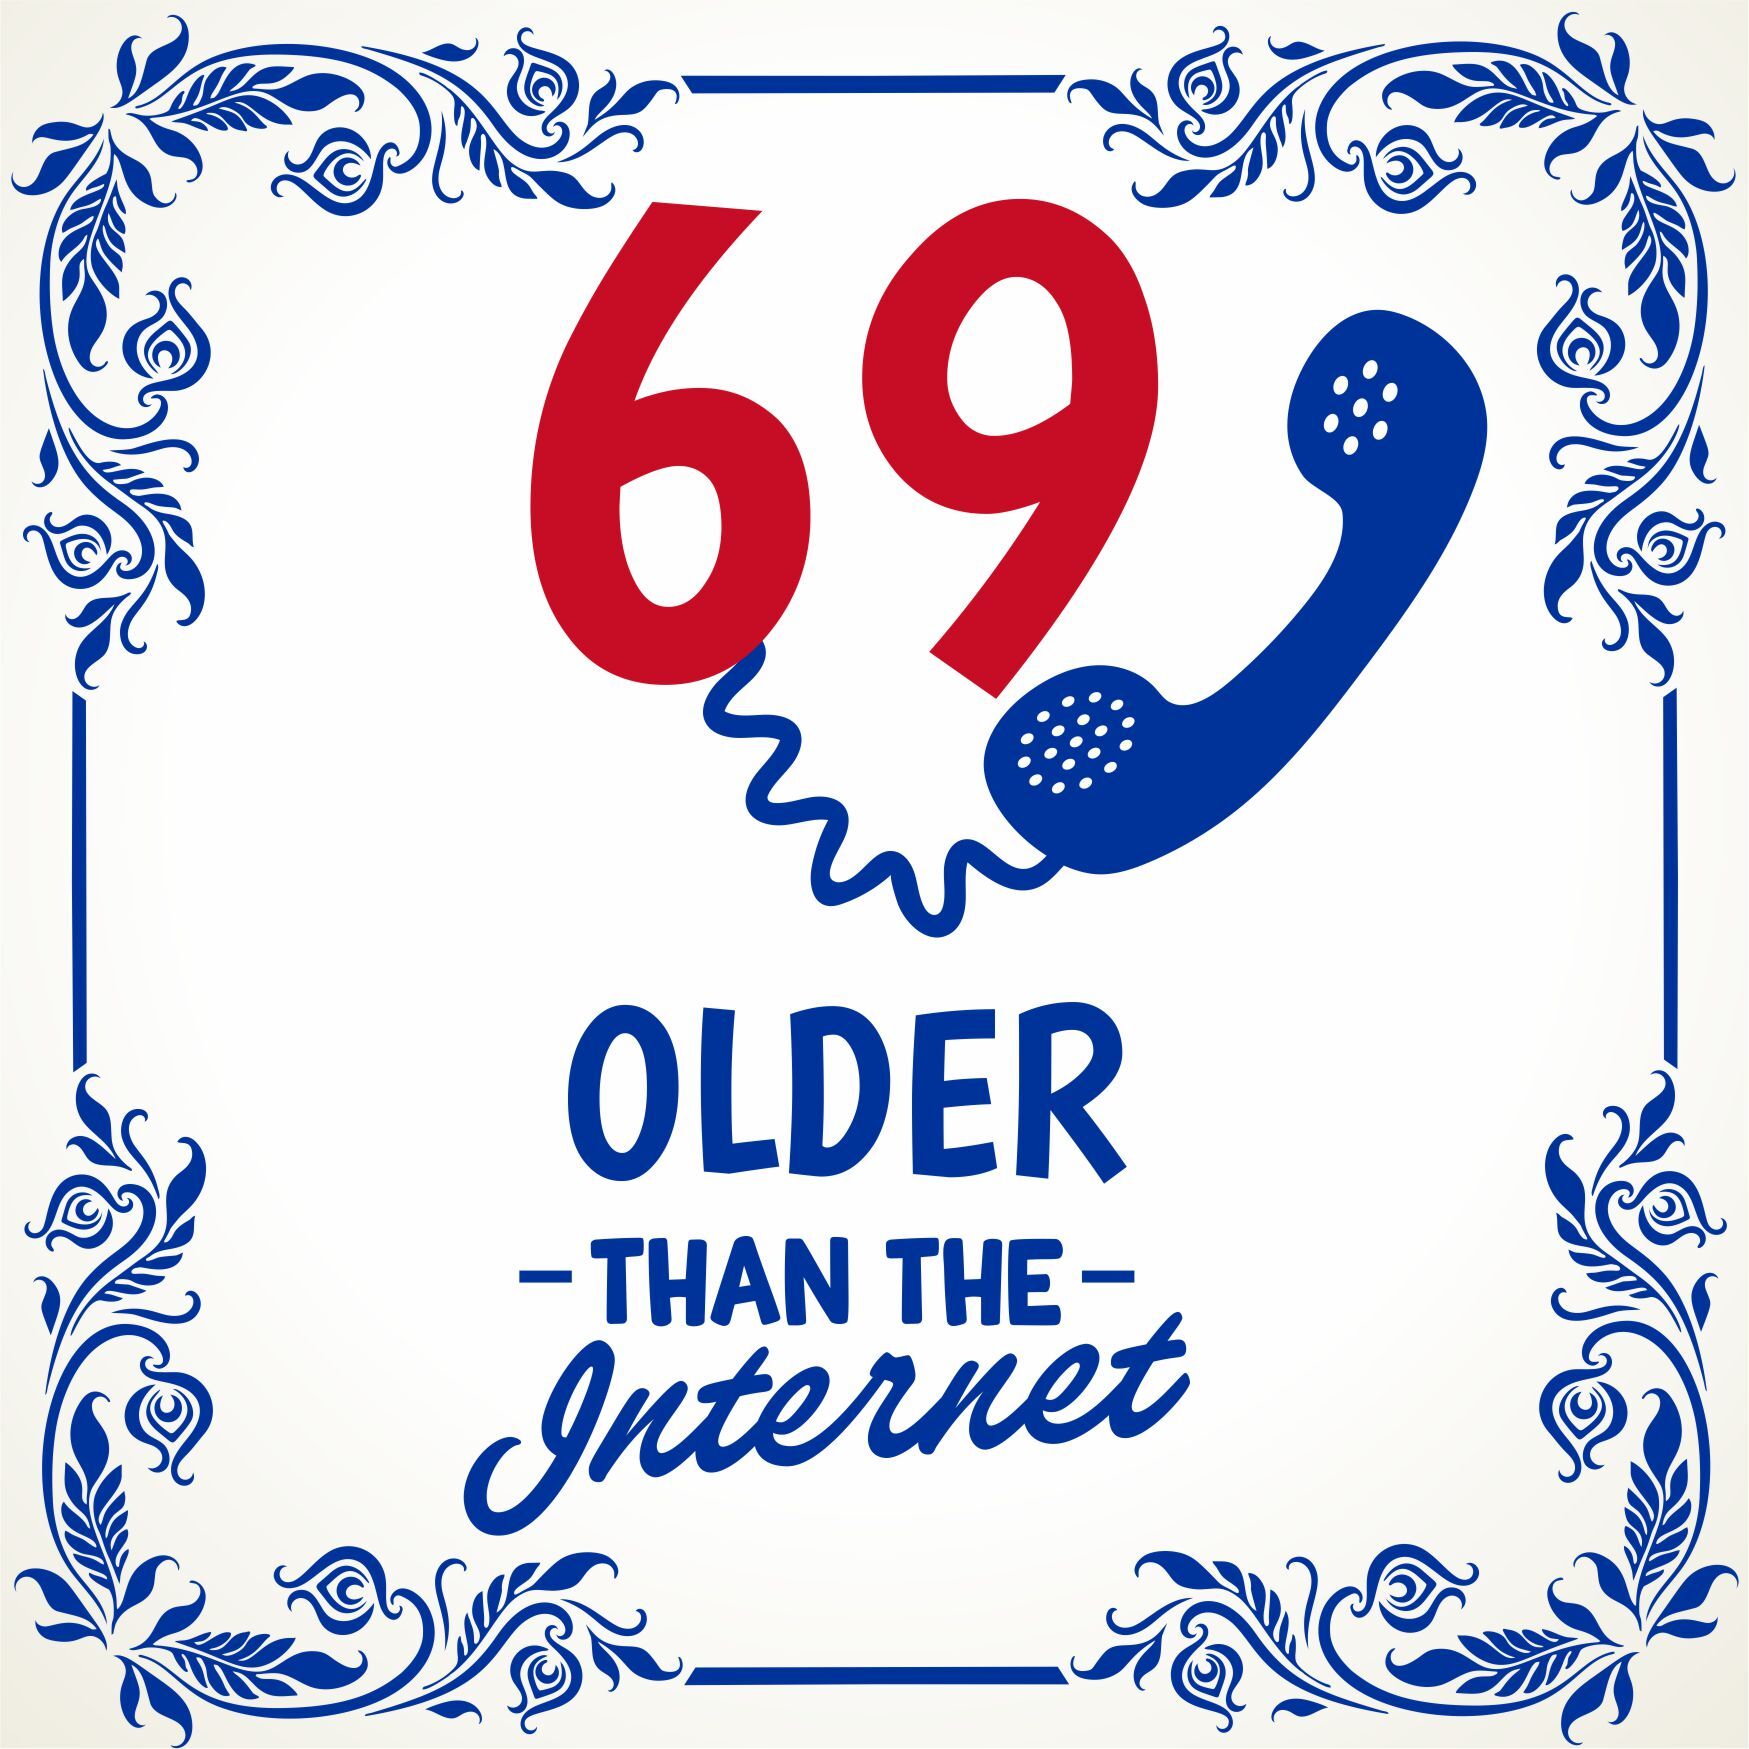 Tegeltje met spreuk 69 older than the internet full colour